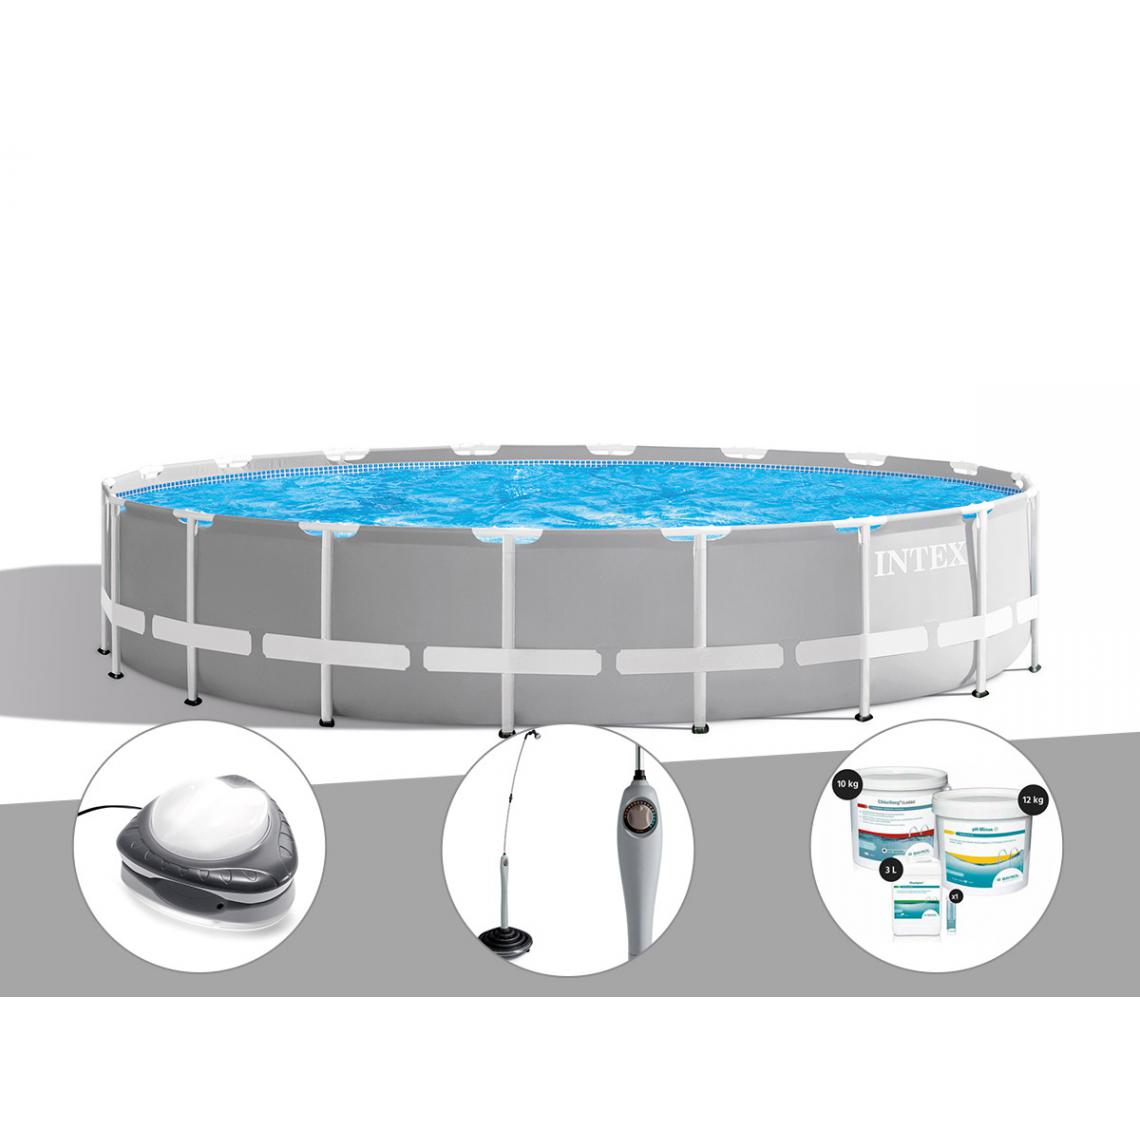 Intex - Kit piscine tubulaire Intex Prism Frame ronde 6,10 x 1,32 m + Spot + Douche solaire + Kit de traitement au chlore - Piscine Tubulaire